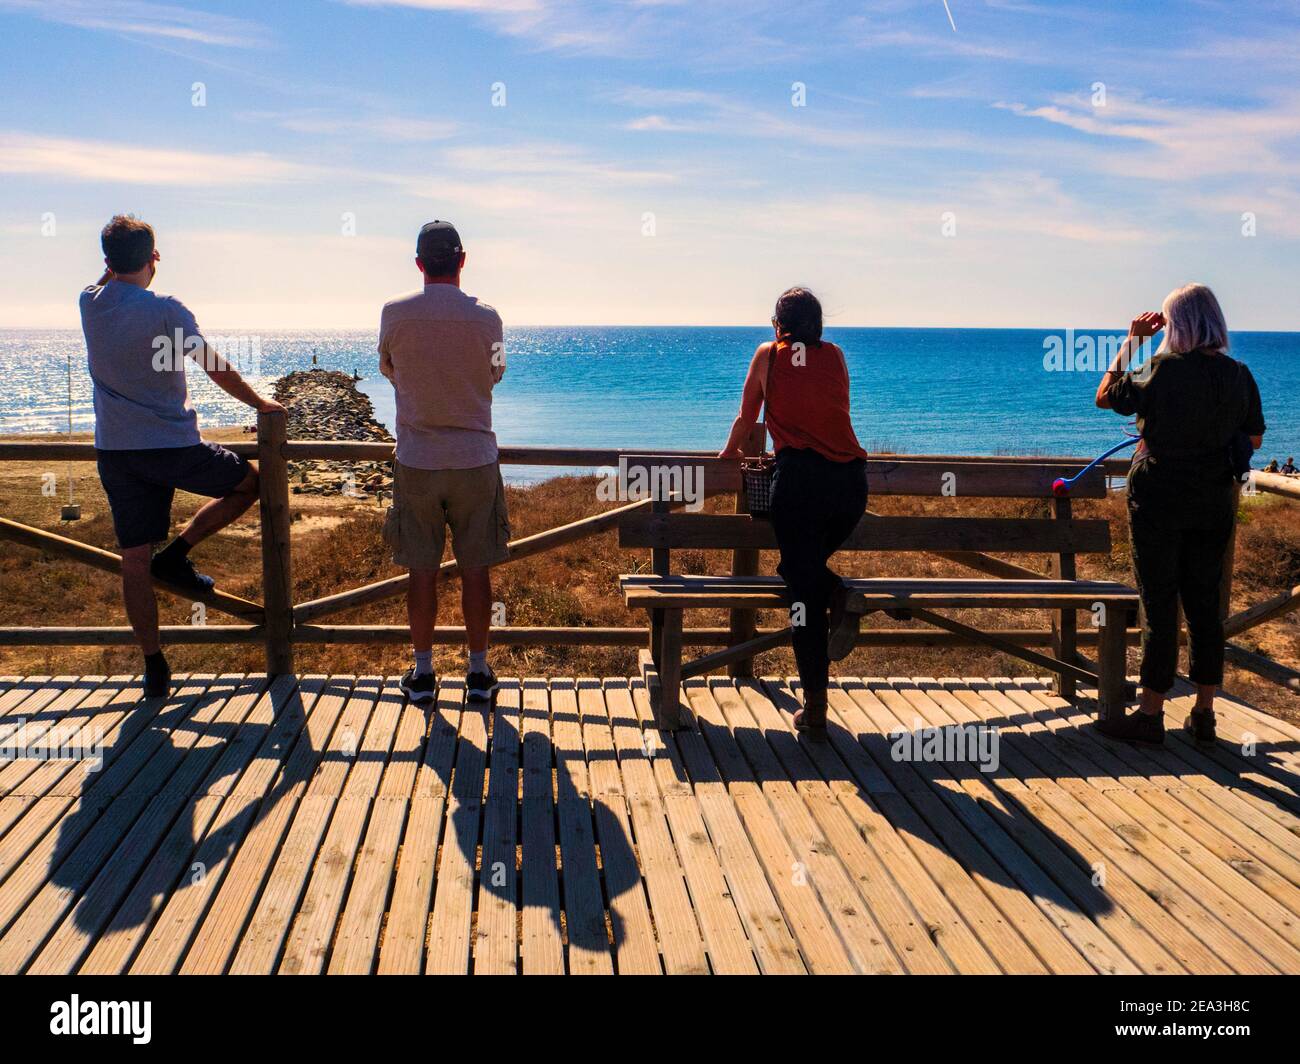 Marbella, Malaga, Spanien. Oktober 2020. Vier Touristen mit dem Rücken und Blick auf das Meer auf einer hölzernen Aussichtsplattform an der Küste von Marbella Stockfoto